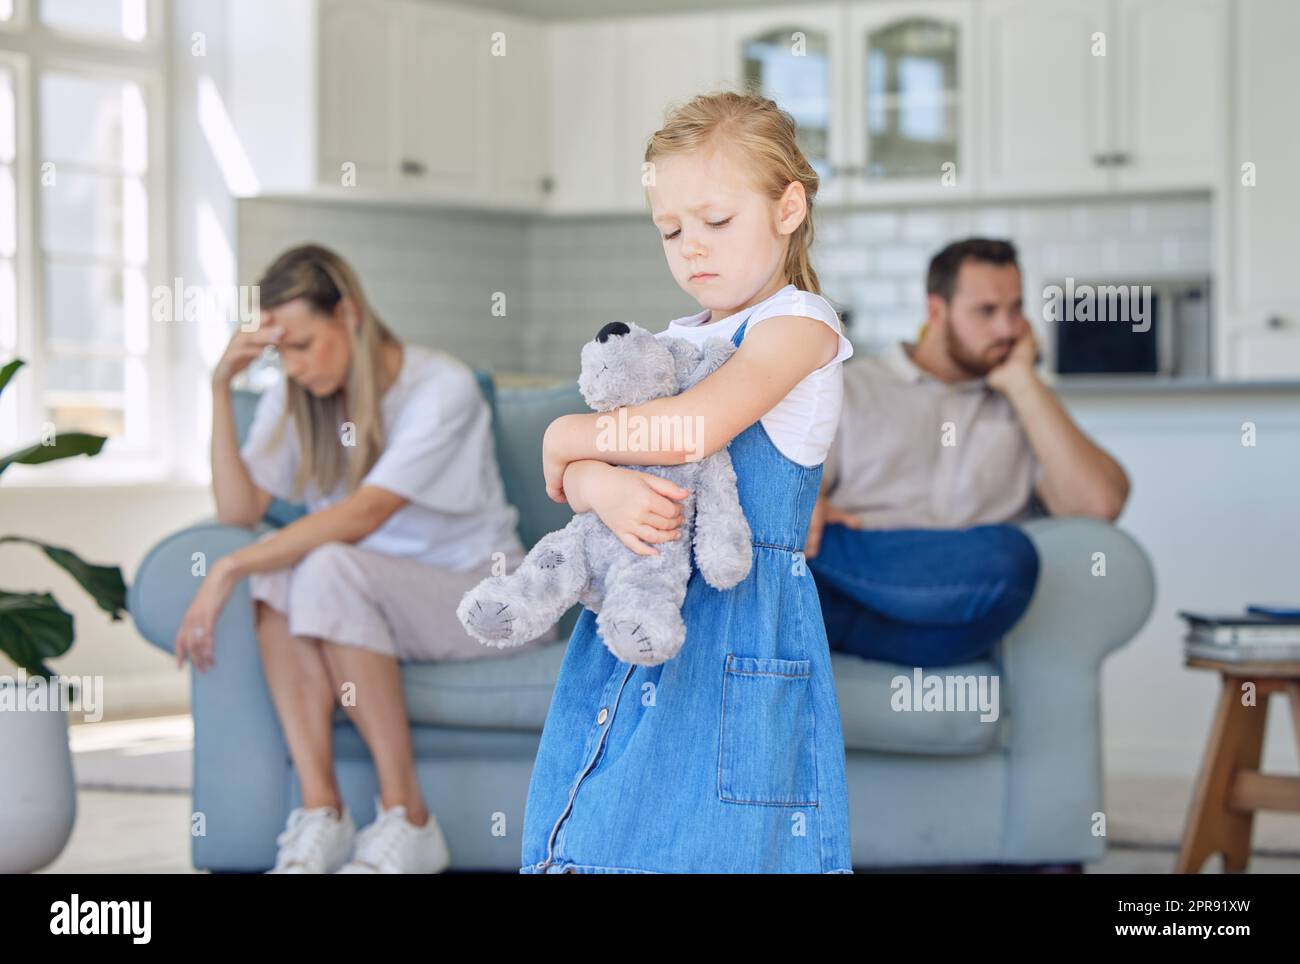 Ein aufgewühltes kleines Mädchen, das ihren Teddybär drückt, während es traurig und deprimiert aussieht, während ihre Eltern im Hintergrund streiten. Dass ihre Eltern sich trennen oder sich scheiden lassen, verursacht Stress Stockfoto